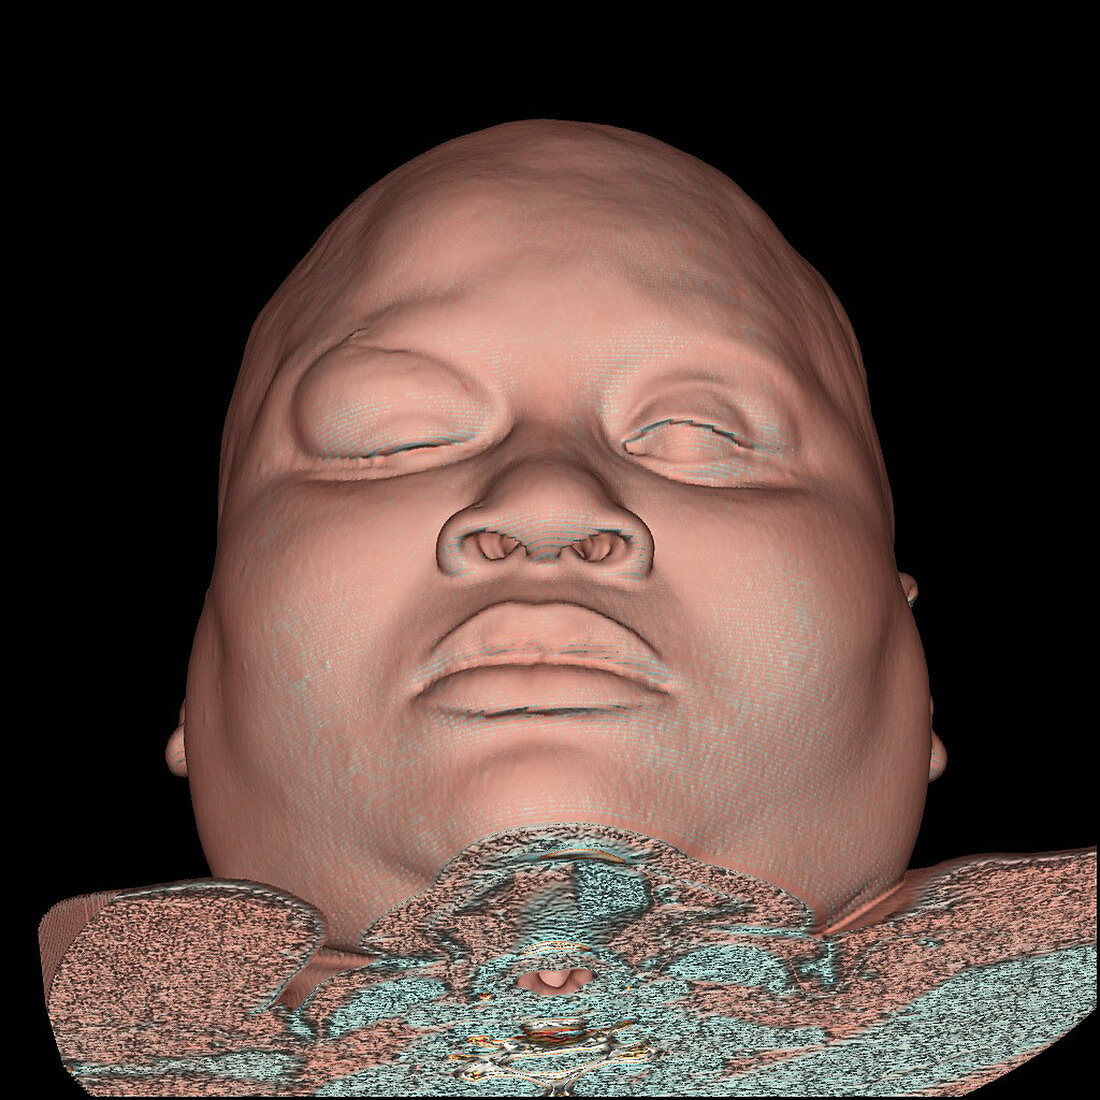 3DCT Image of Facial Trauma